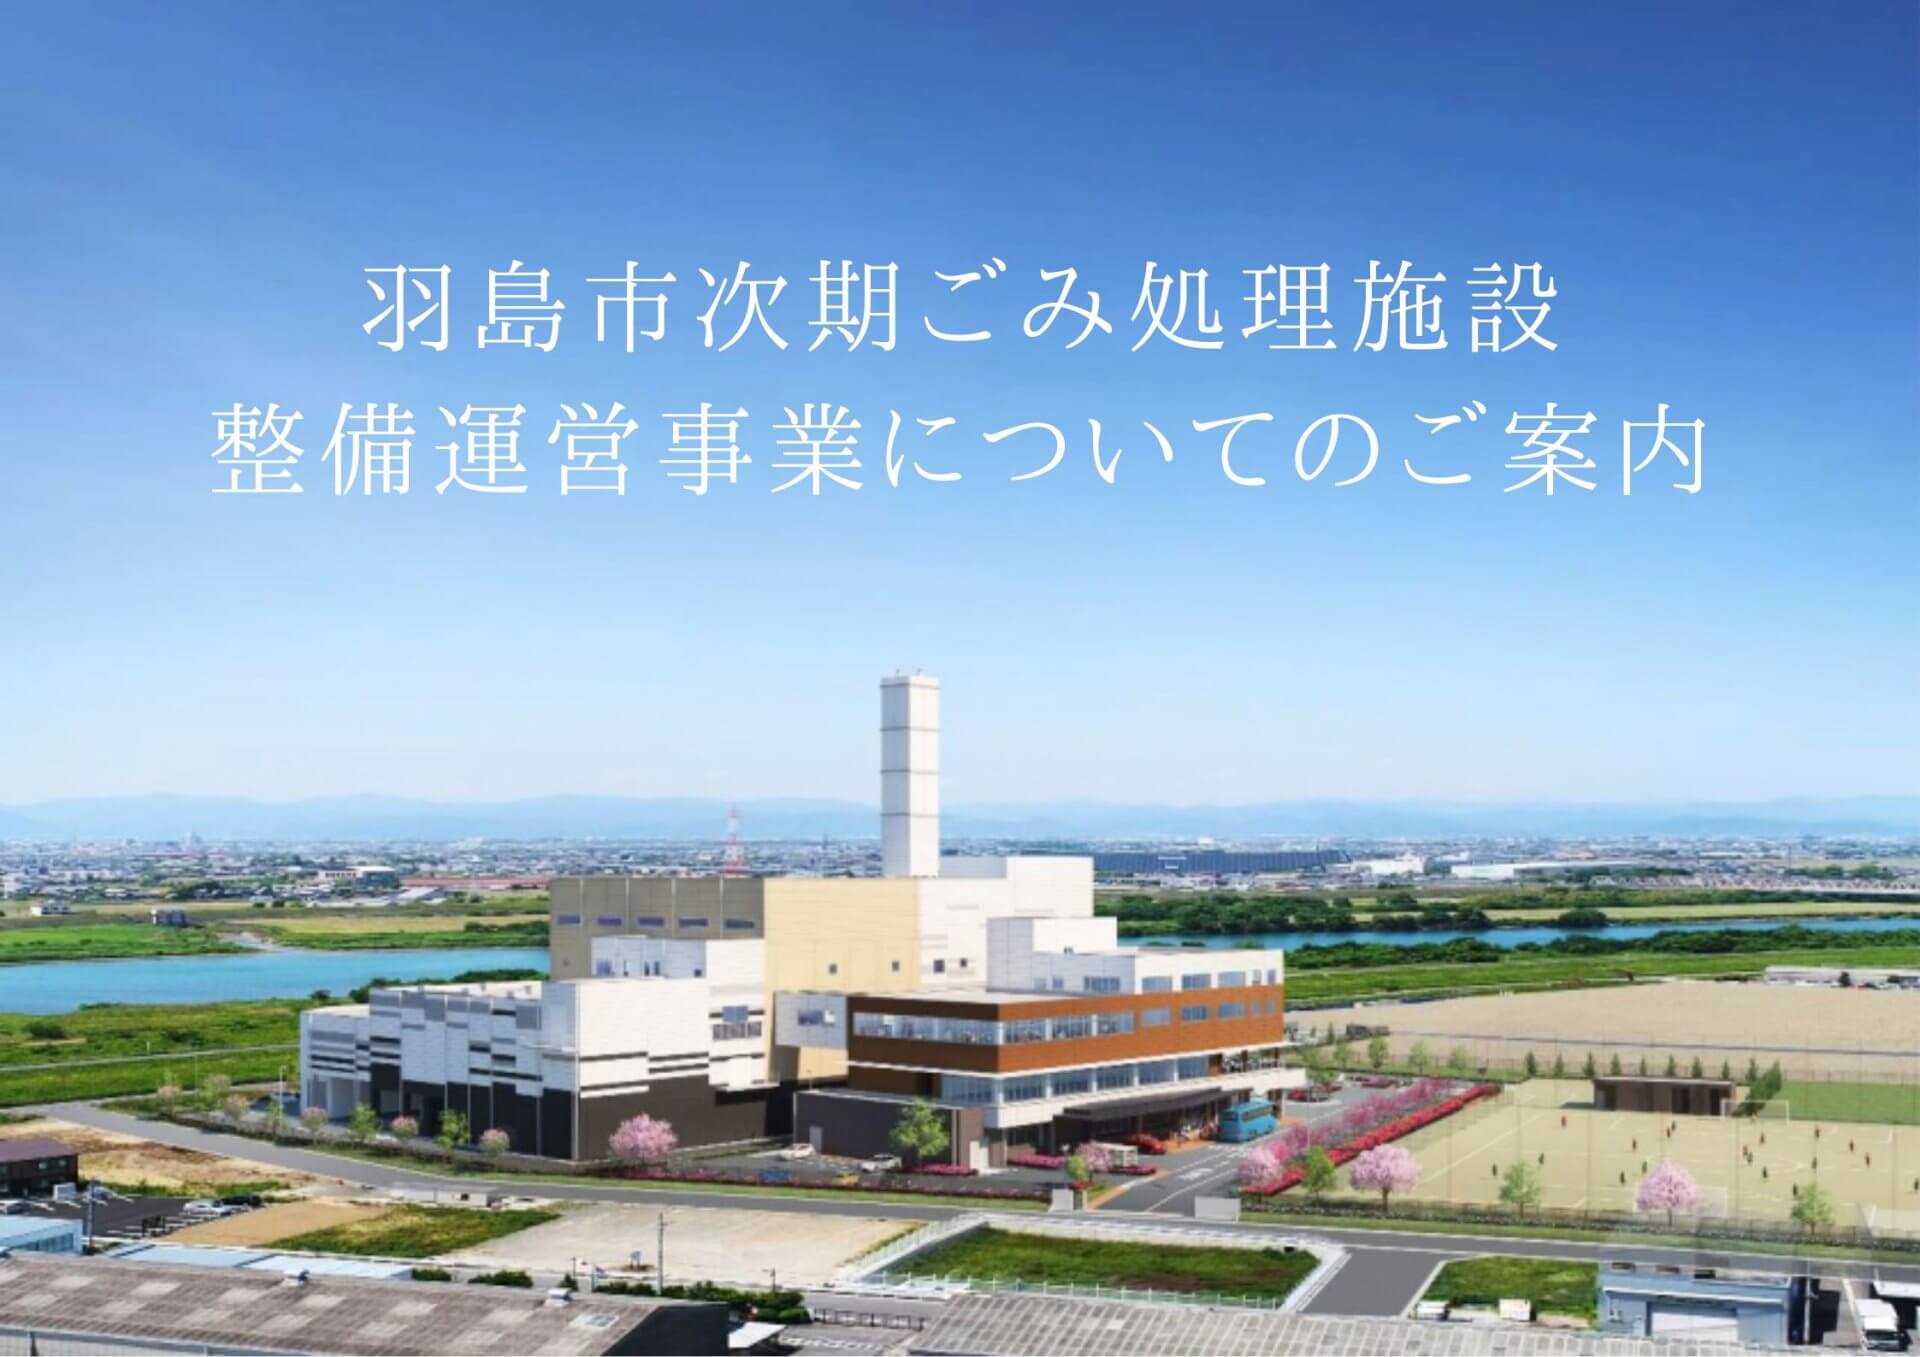 羽島市次期ごみ処理施設整備運営事業についてのご案内